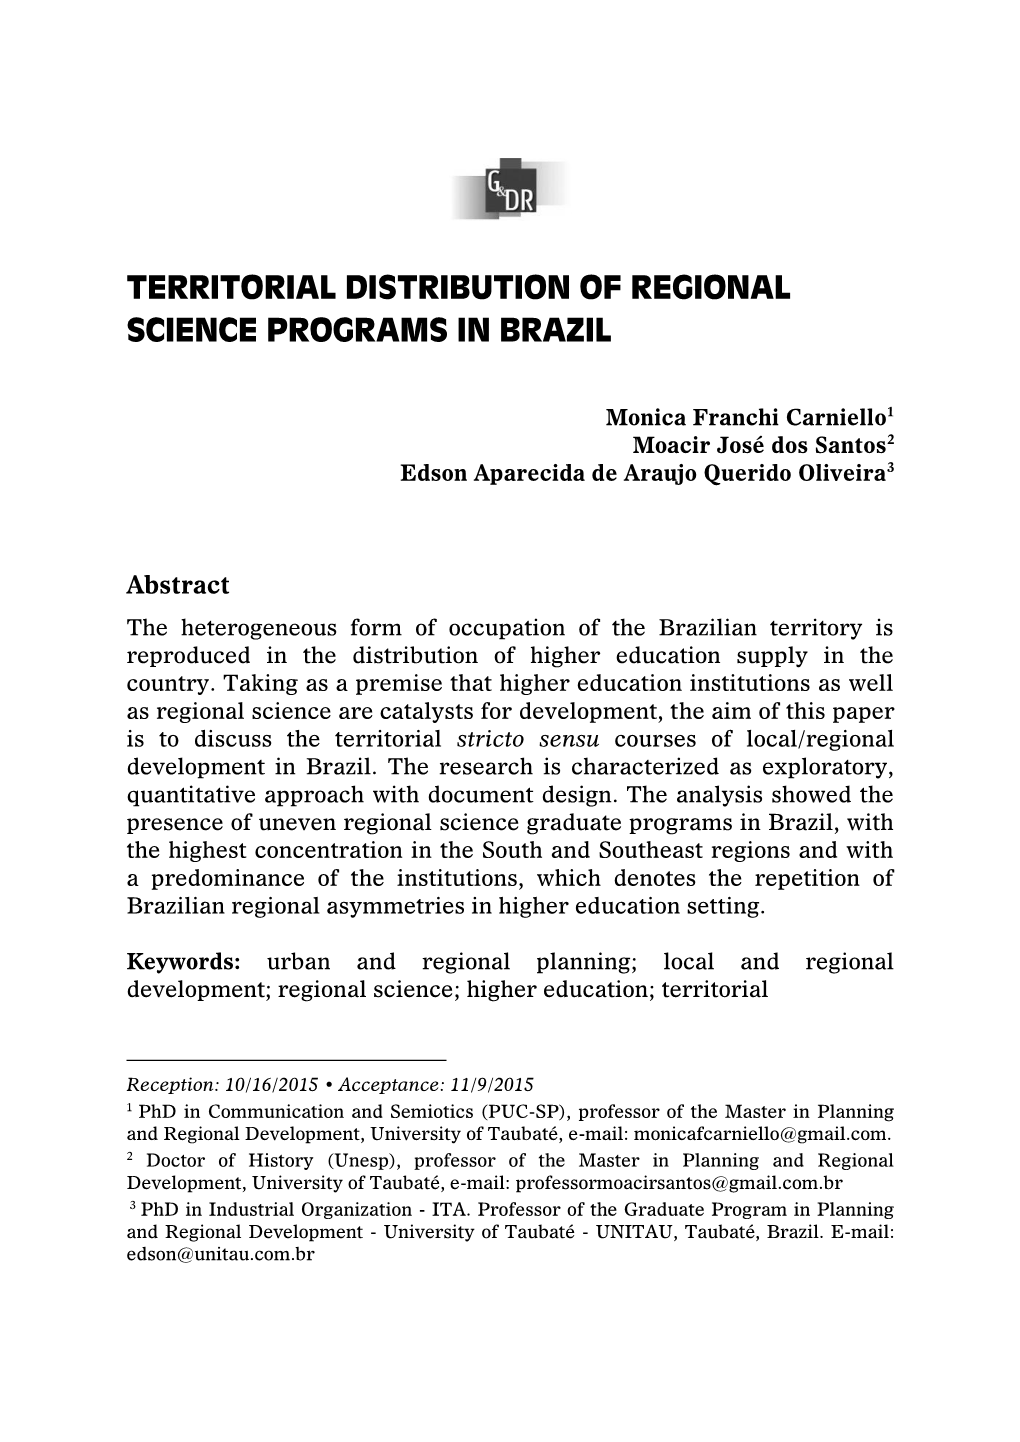 Territorial Distribution of Regional Science Programs in Brazil